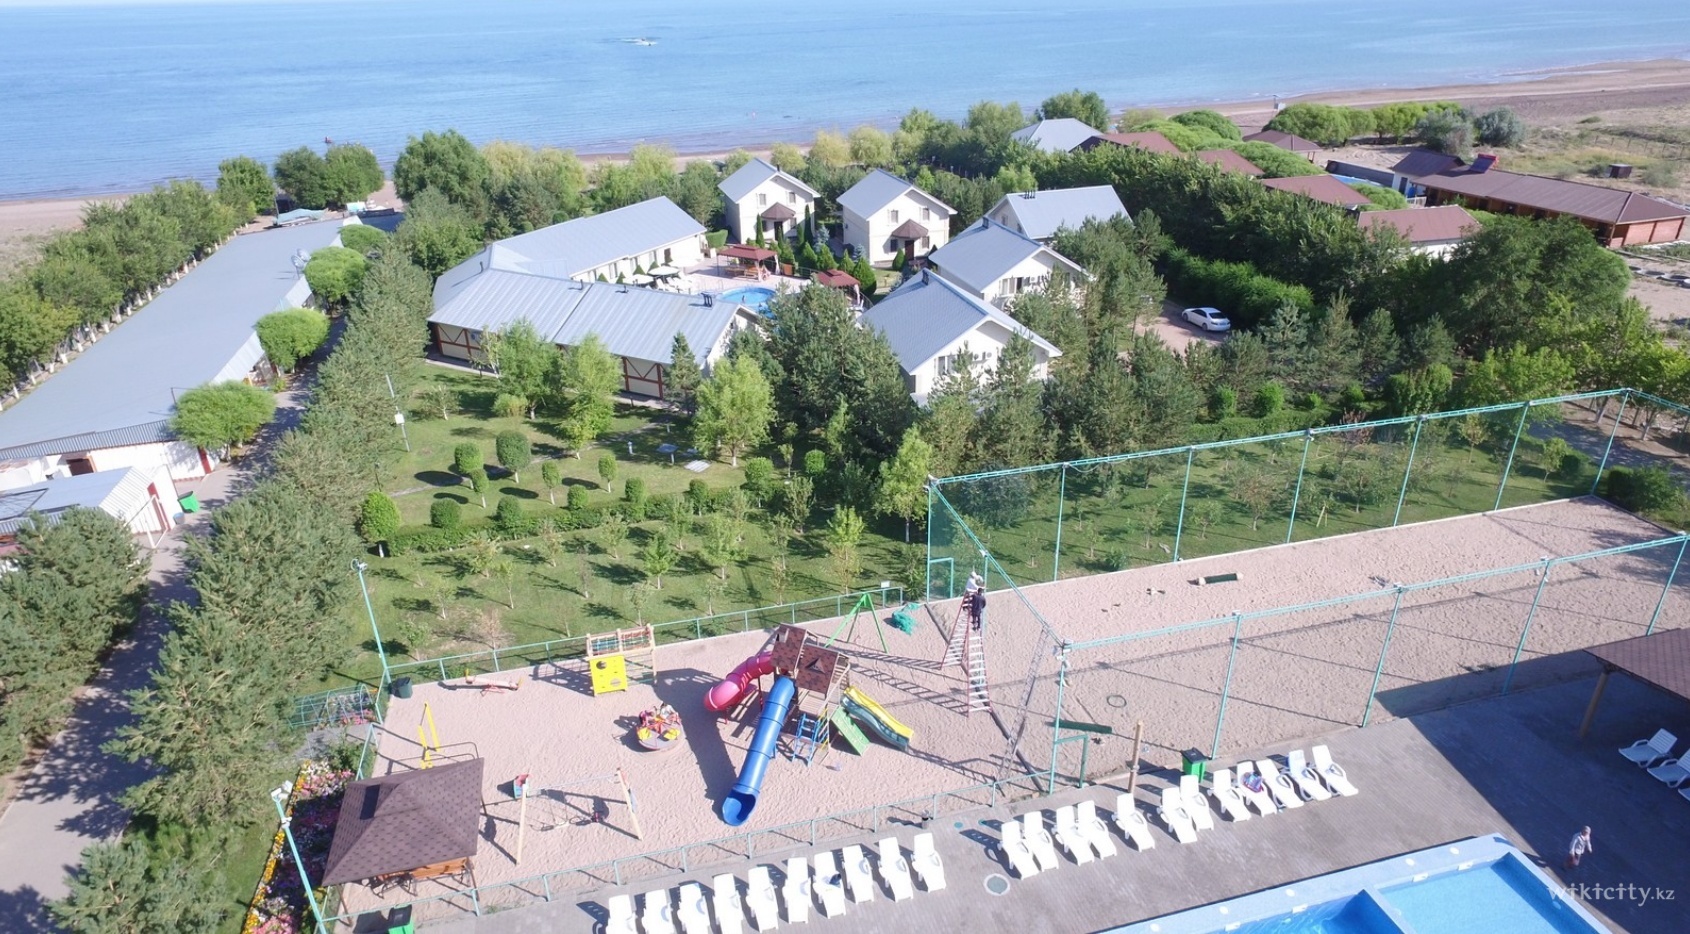 Фото Центр Семейного Отдыха - Kapchik.kz - Қонаев. Вид сверху на территорию комплекса